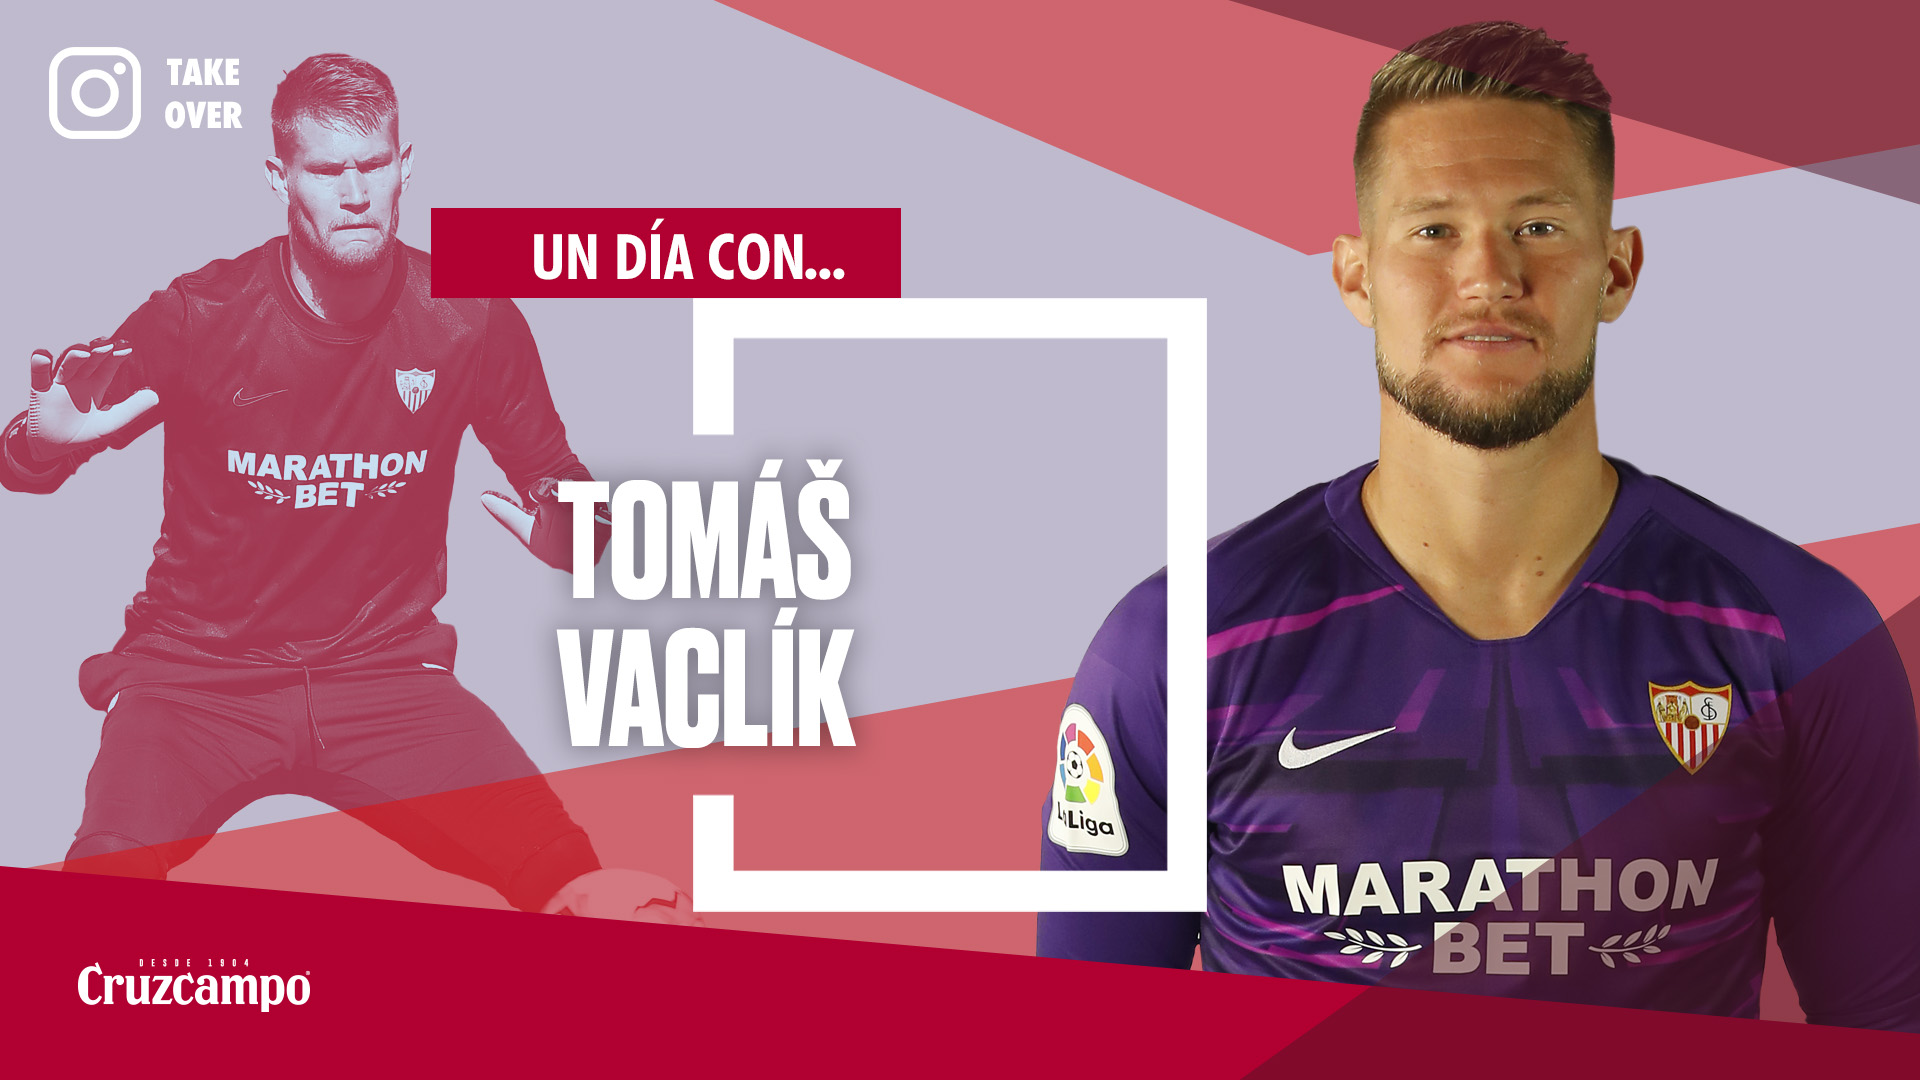 Take Over de Tomas Vaclík